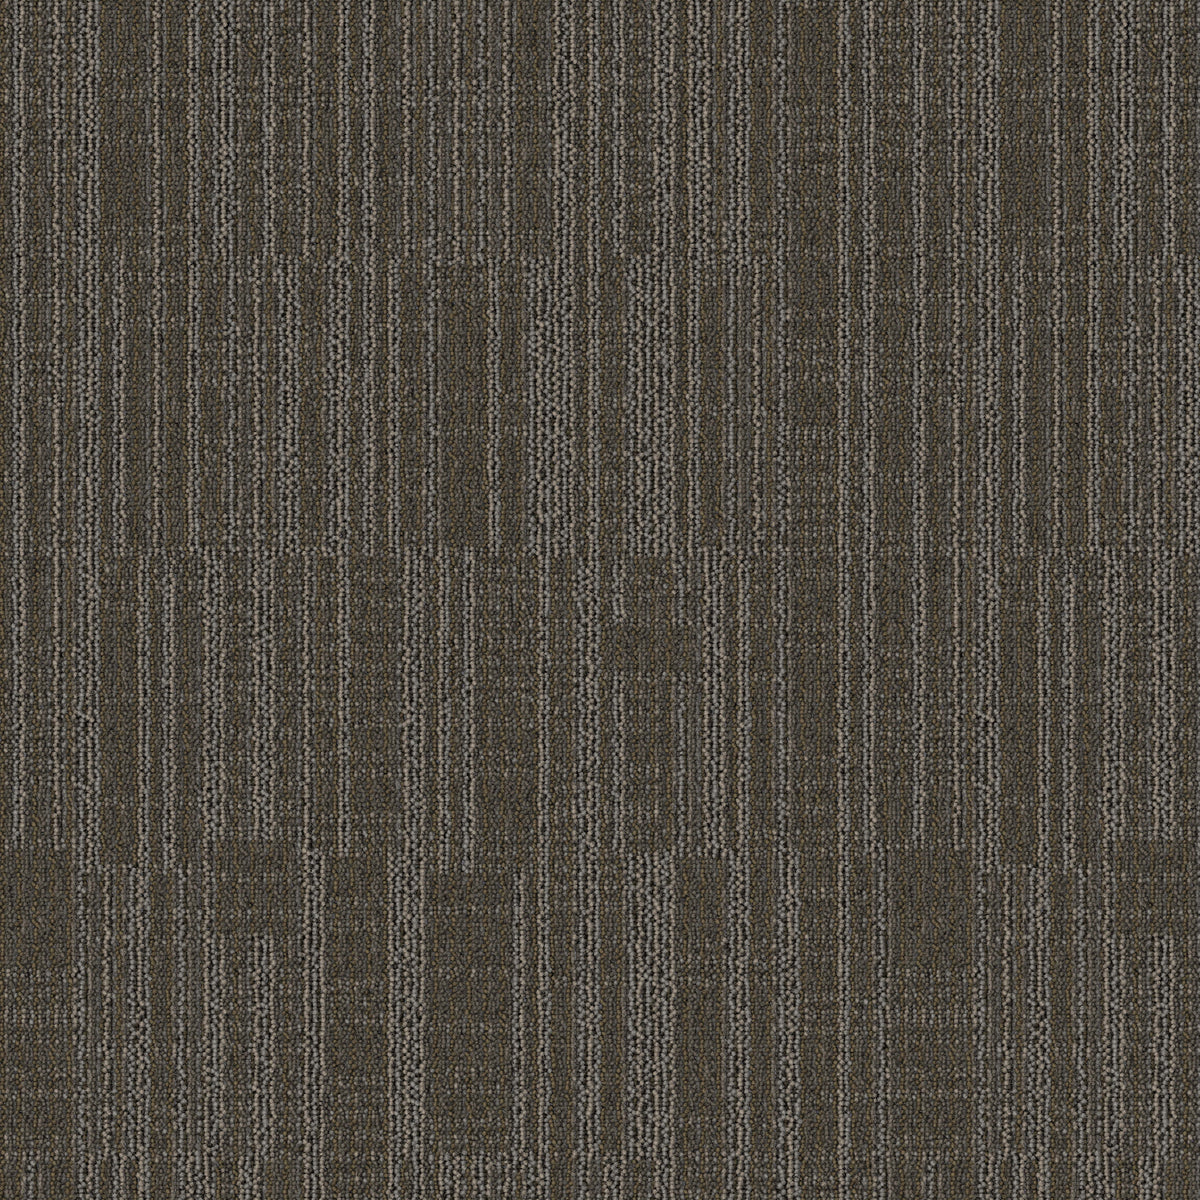 Mohawk Group - Bending Earth - Datum - Carpet Tile - Chert